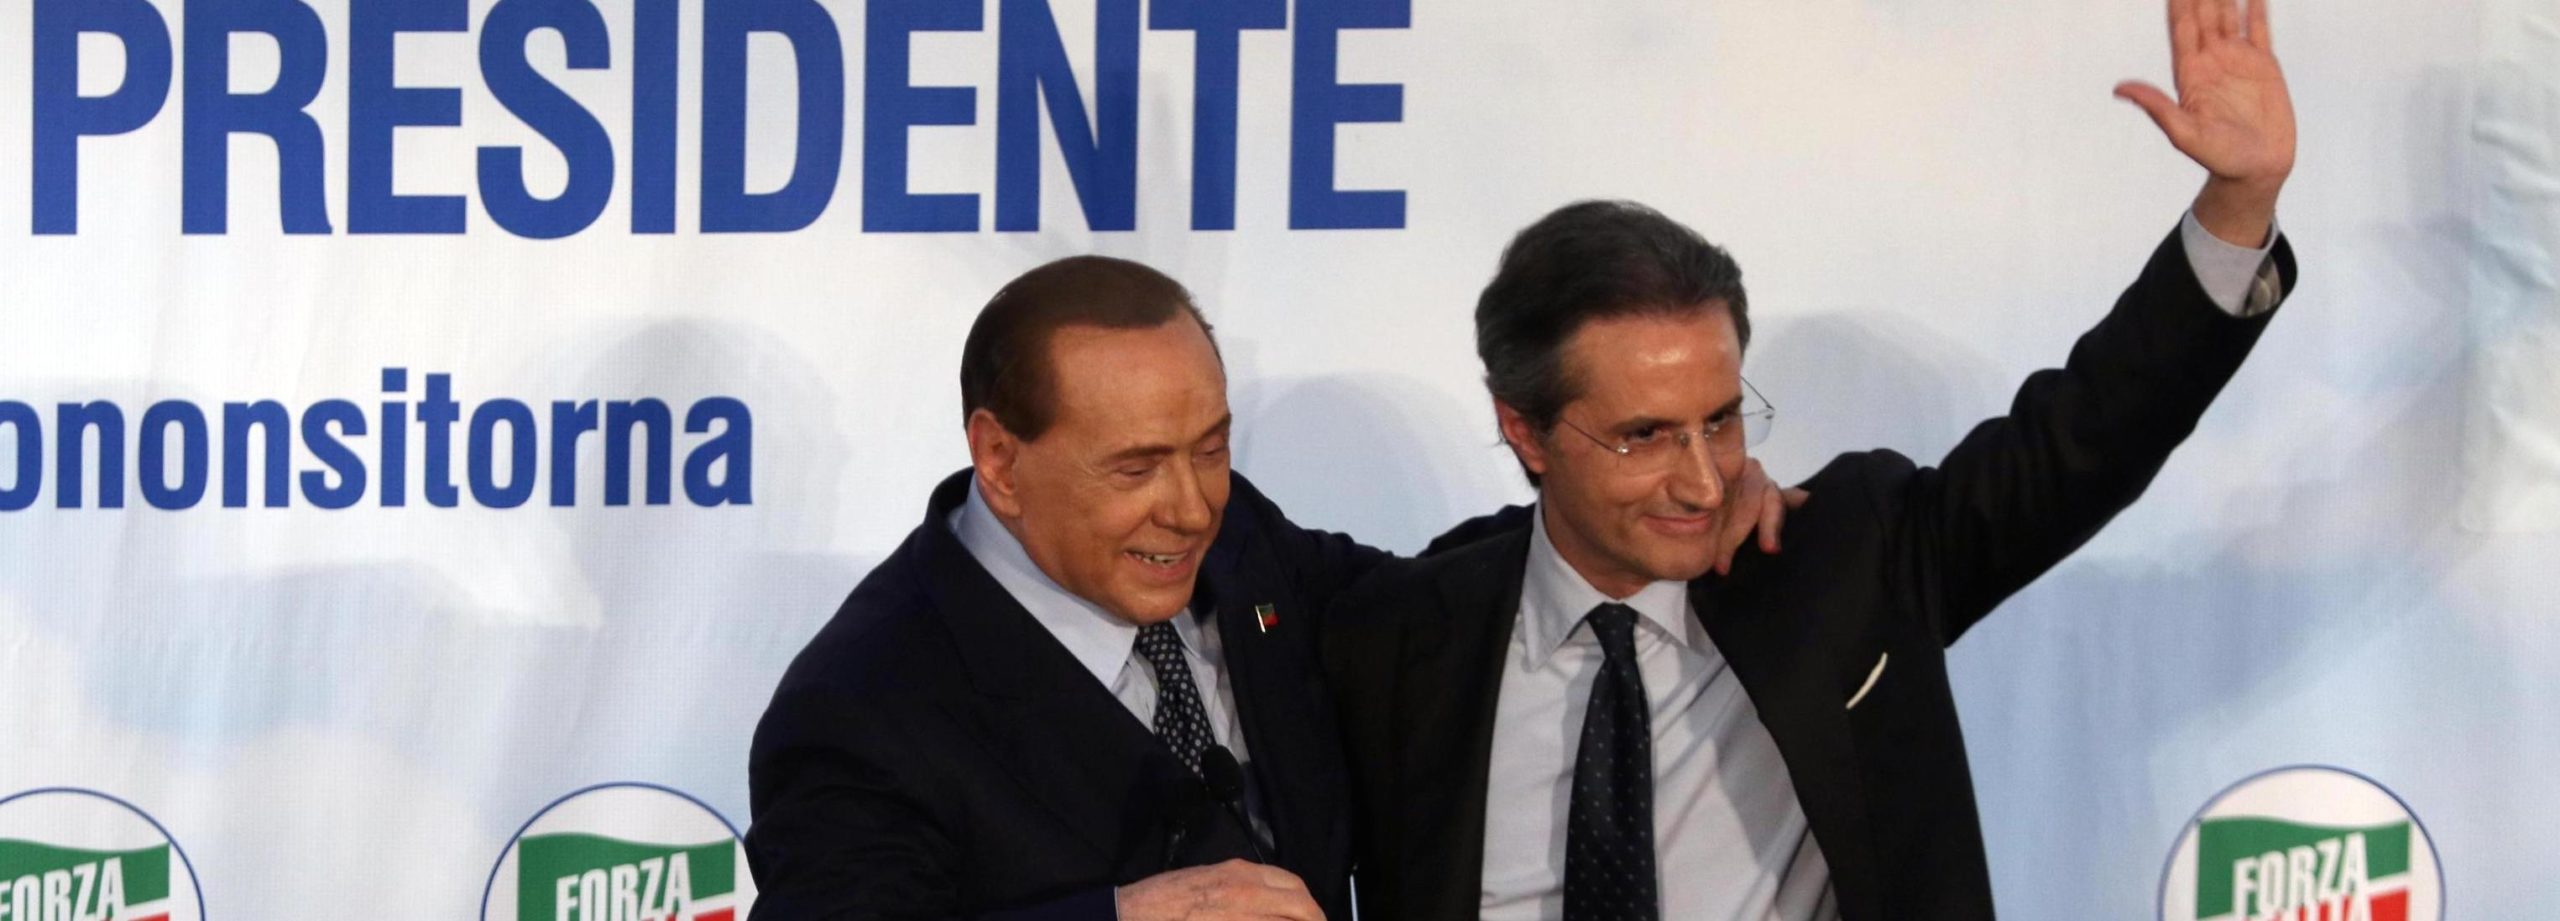 Regionali Campania, Lega critica scelta Caldoro: Berlusconi pronto a correre da solo